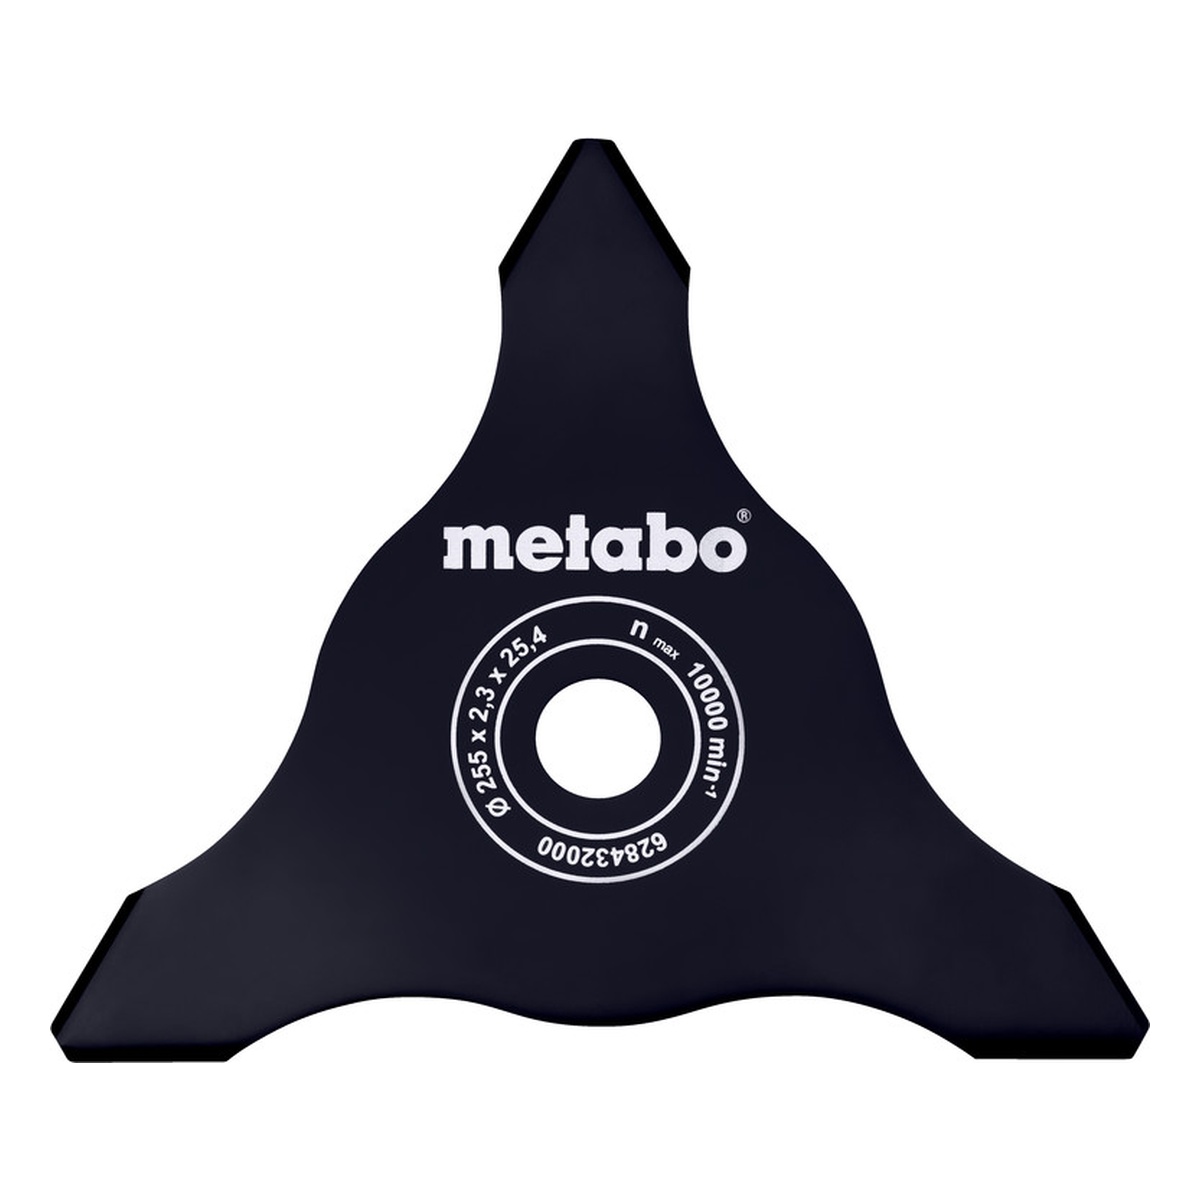 Metabo Dickichtmesser 3-flügelig - 1 Stk.